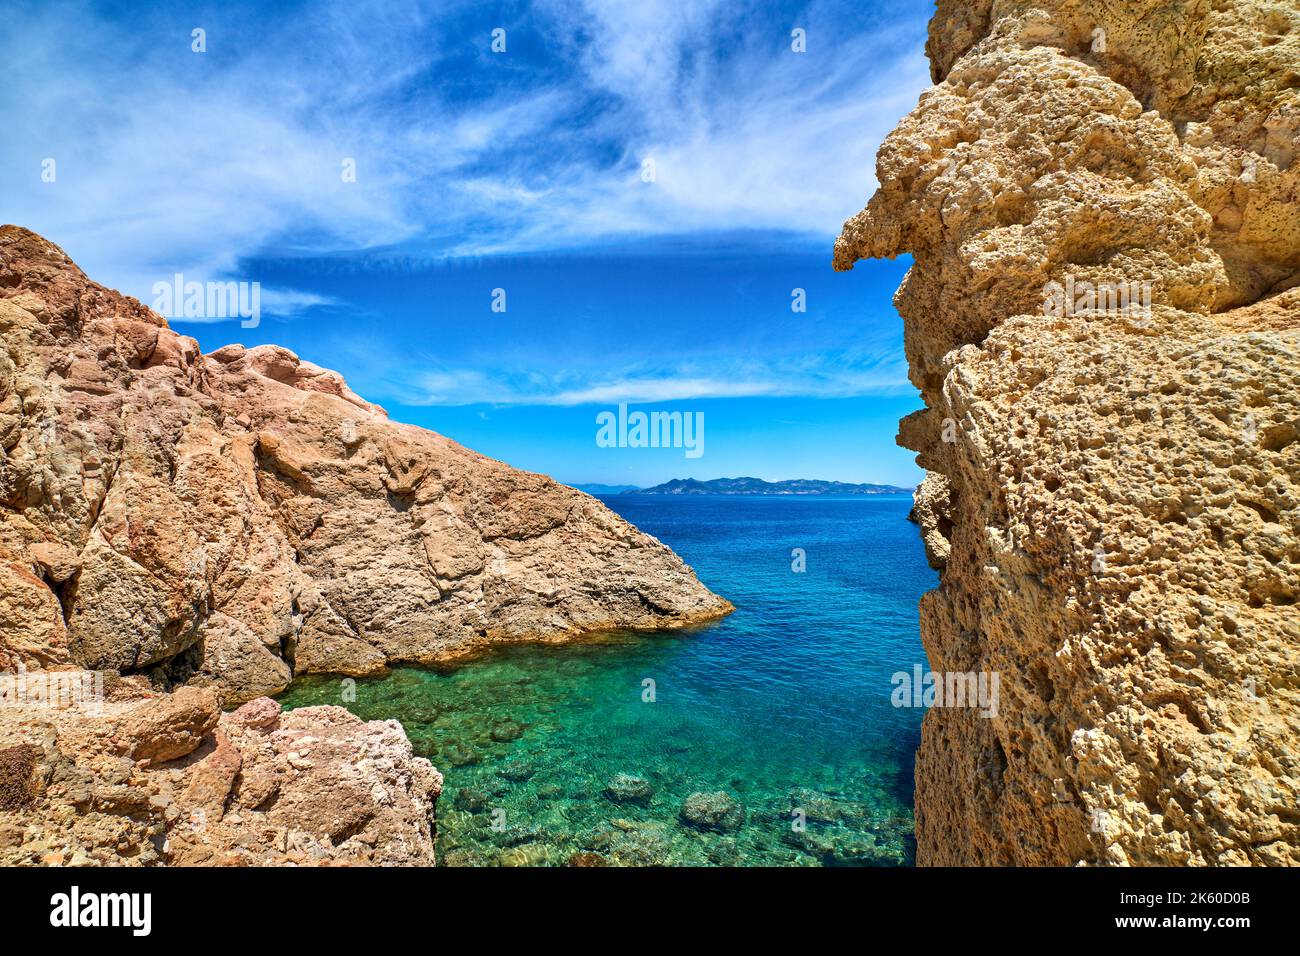 Griechische Insellandschaft, Kalksteinfelsen, azurblaues Meer, blauer Himmel, Urlaub. Idyllisches Reiseziel, Sommerurlaub. Stockfoto